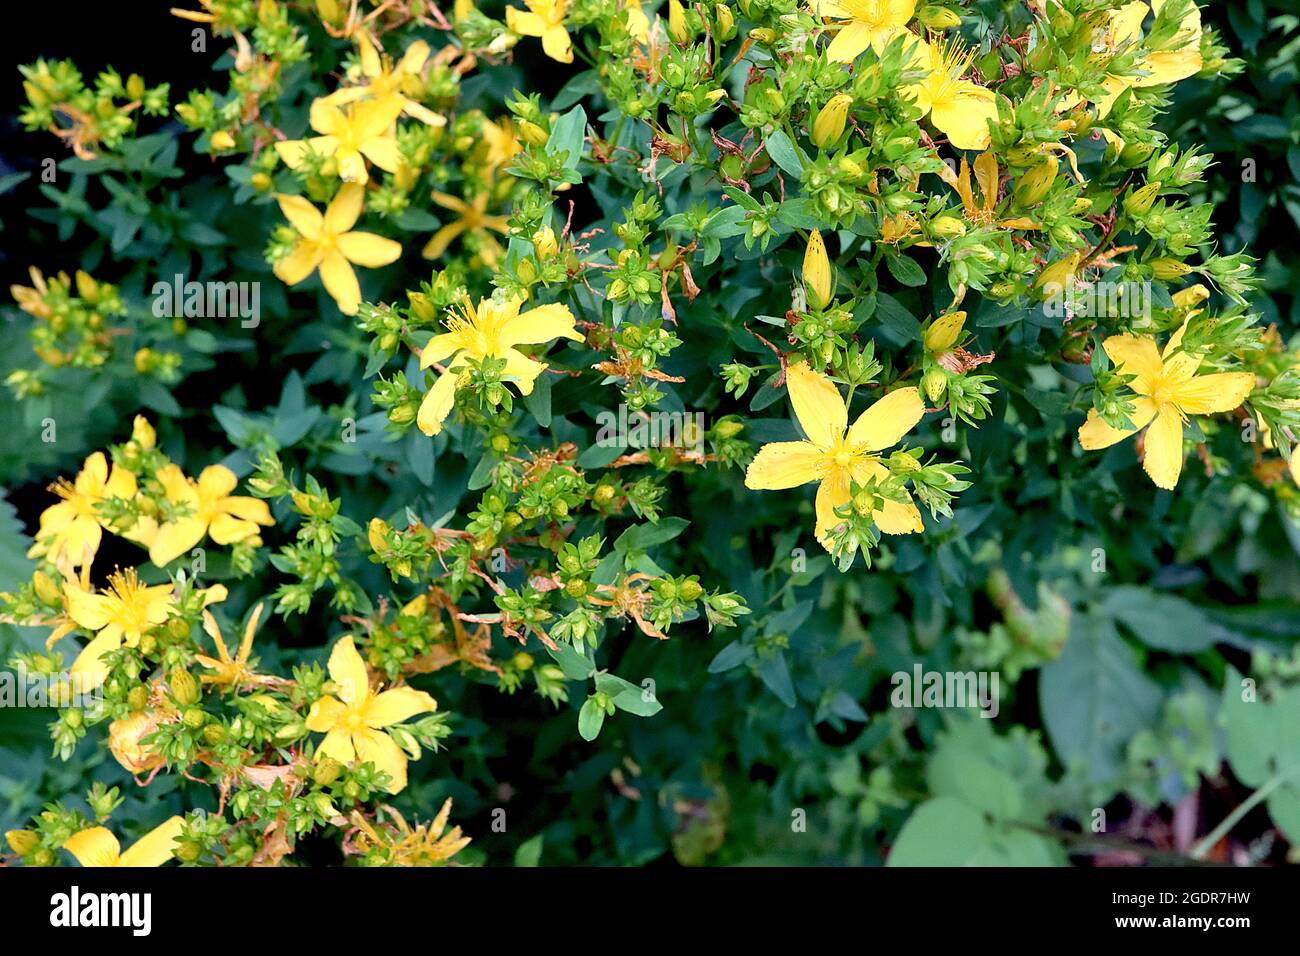 Hypericum perforatum perfora la hierba de San Juan – masa de pequeñas flores amarillas, sépalos verdes con puntos negros, pequeñas hojas verdes oscuras, julio, Inglaterra, Reino Unido Foto de stock